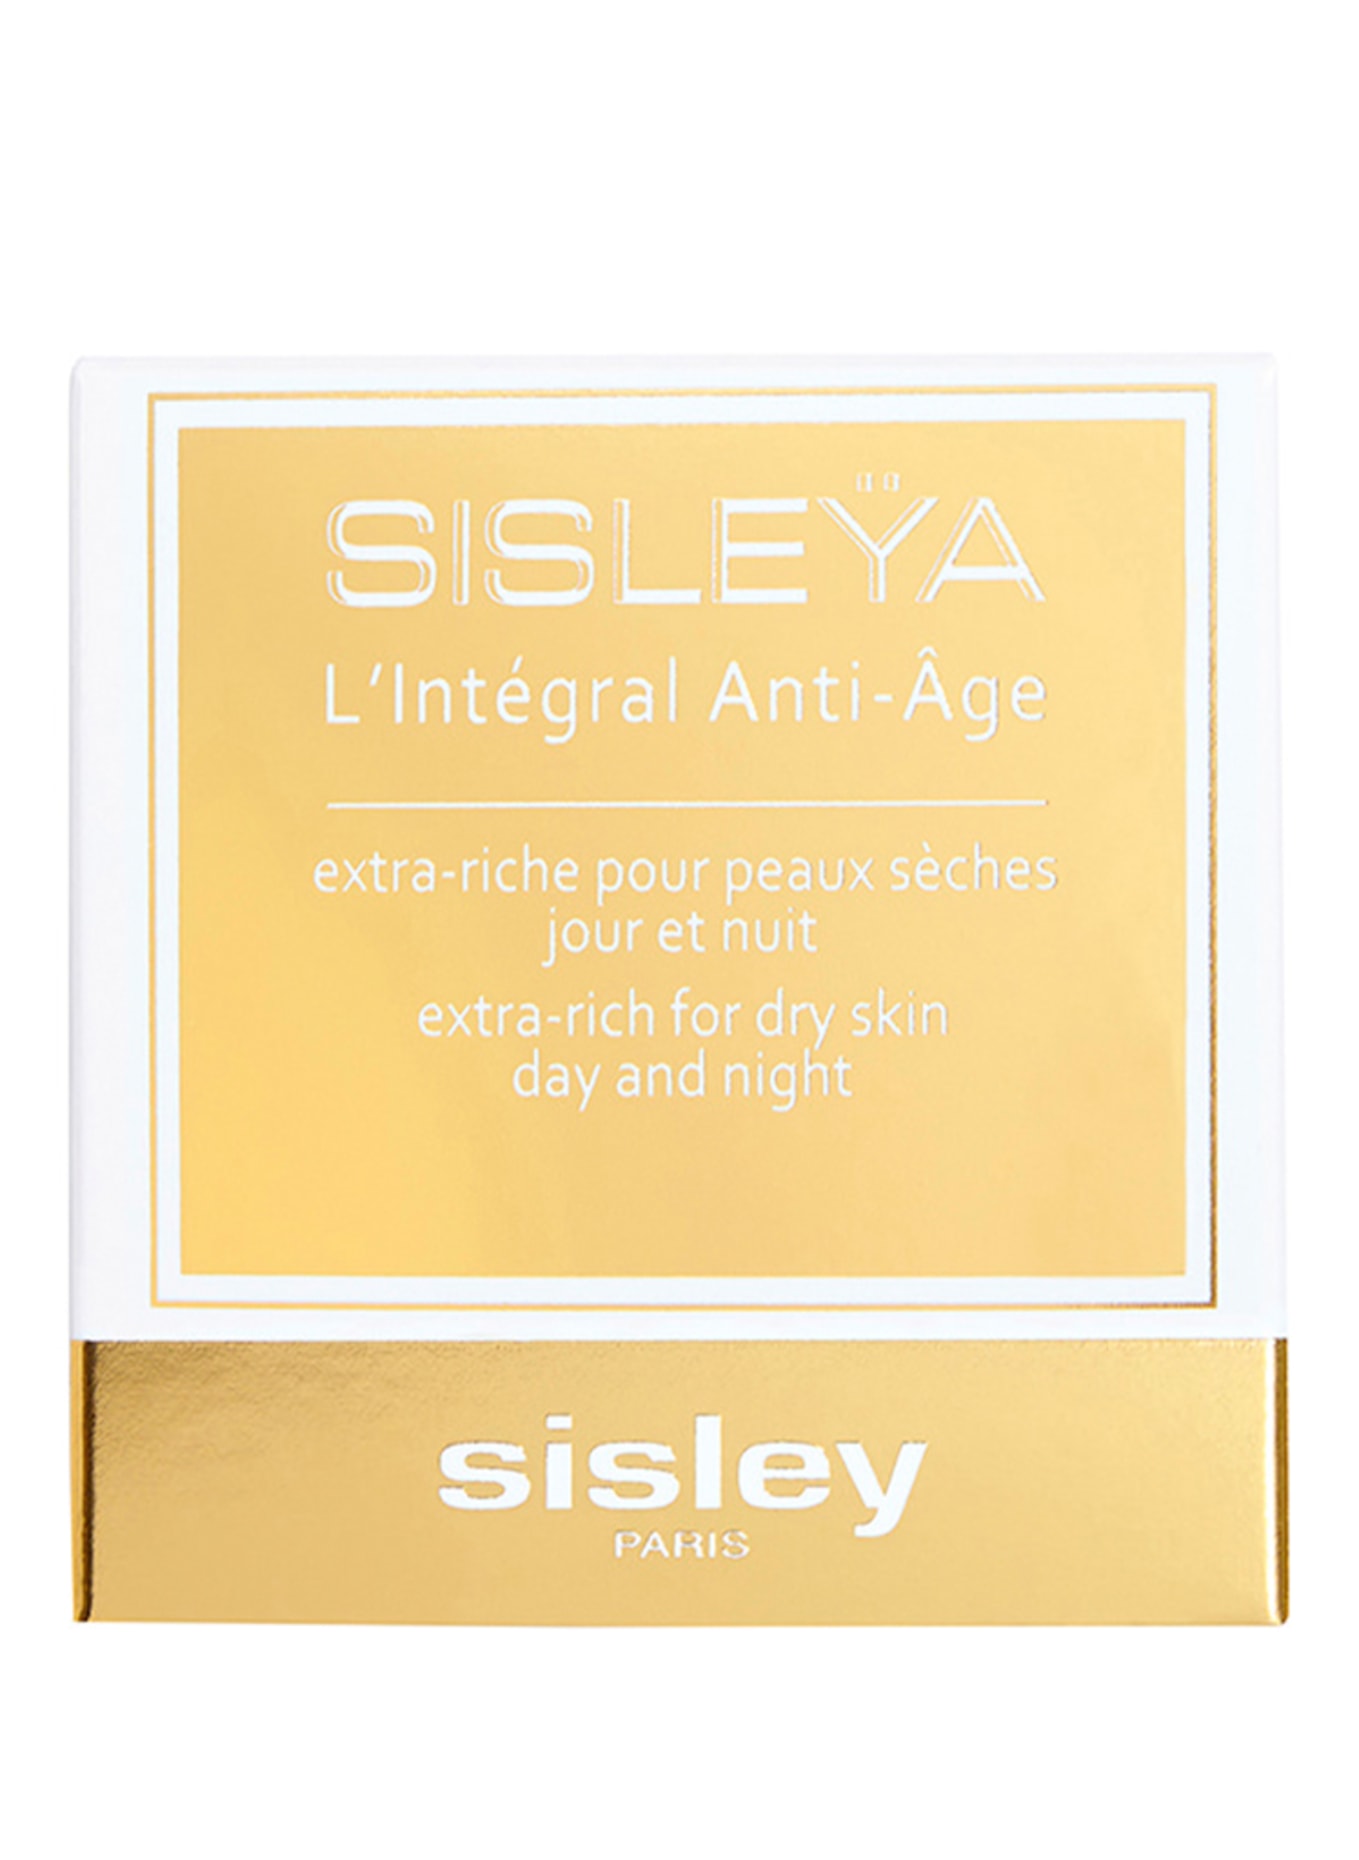 sisley Paris SISLEŸA L'INTÉGRAL ANTI-AGE EXTRA-RICH (Obrazek 2)